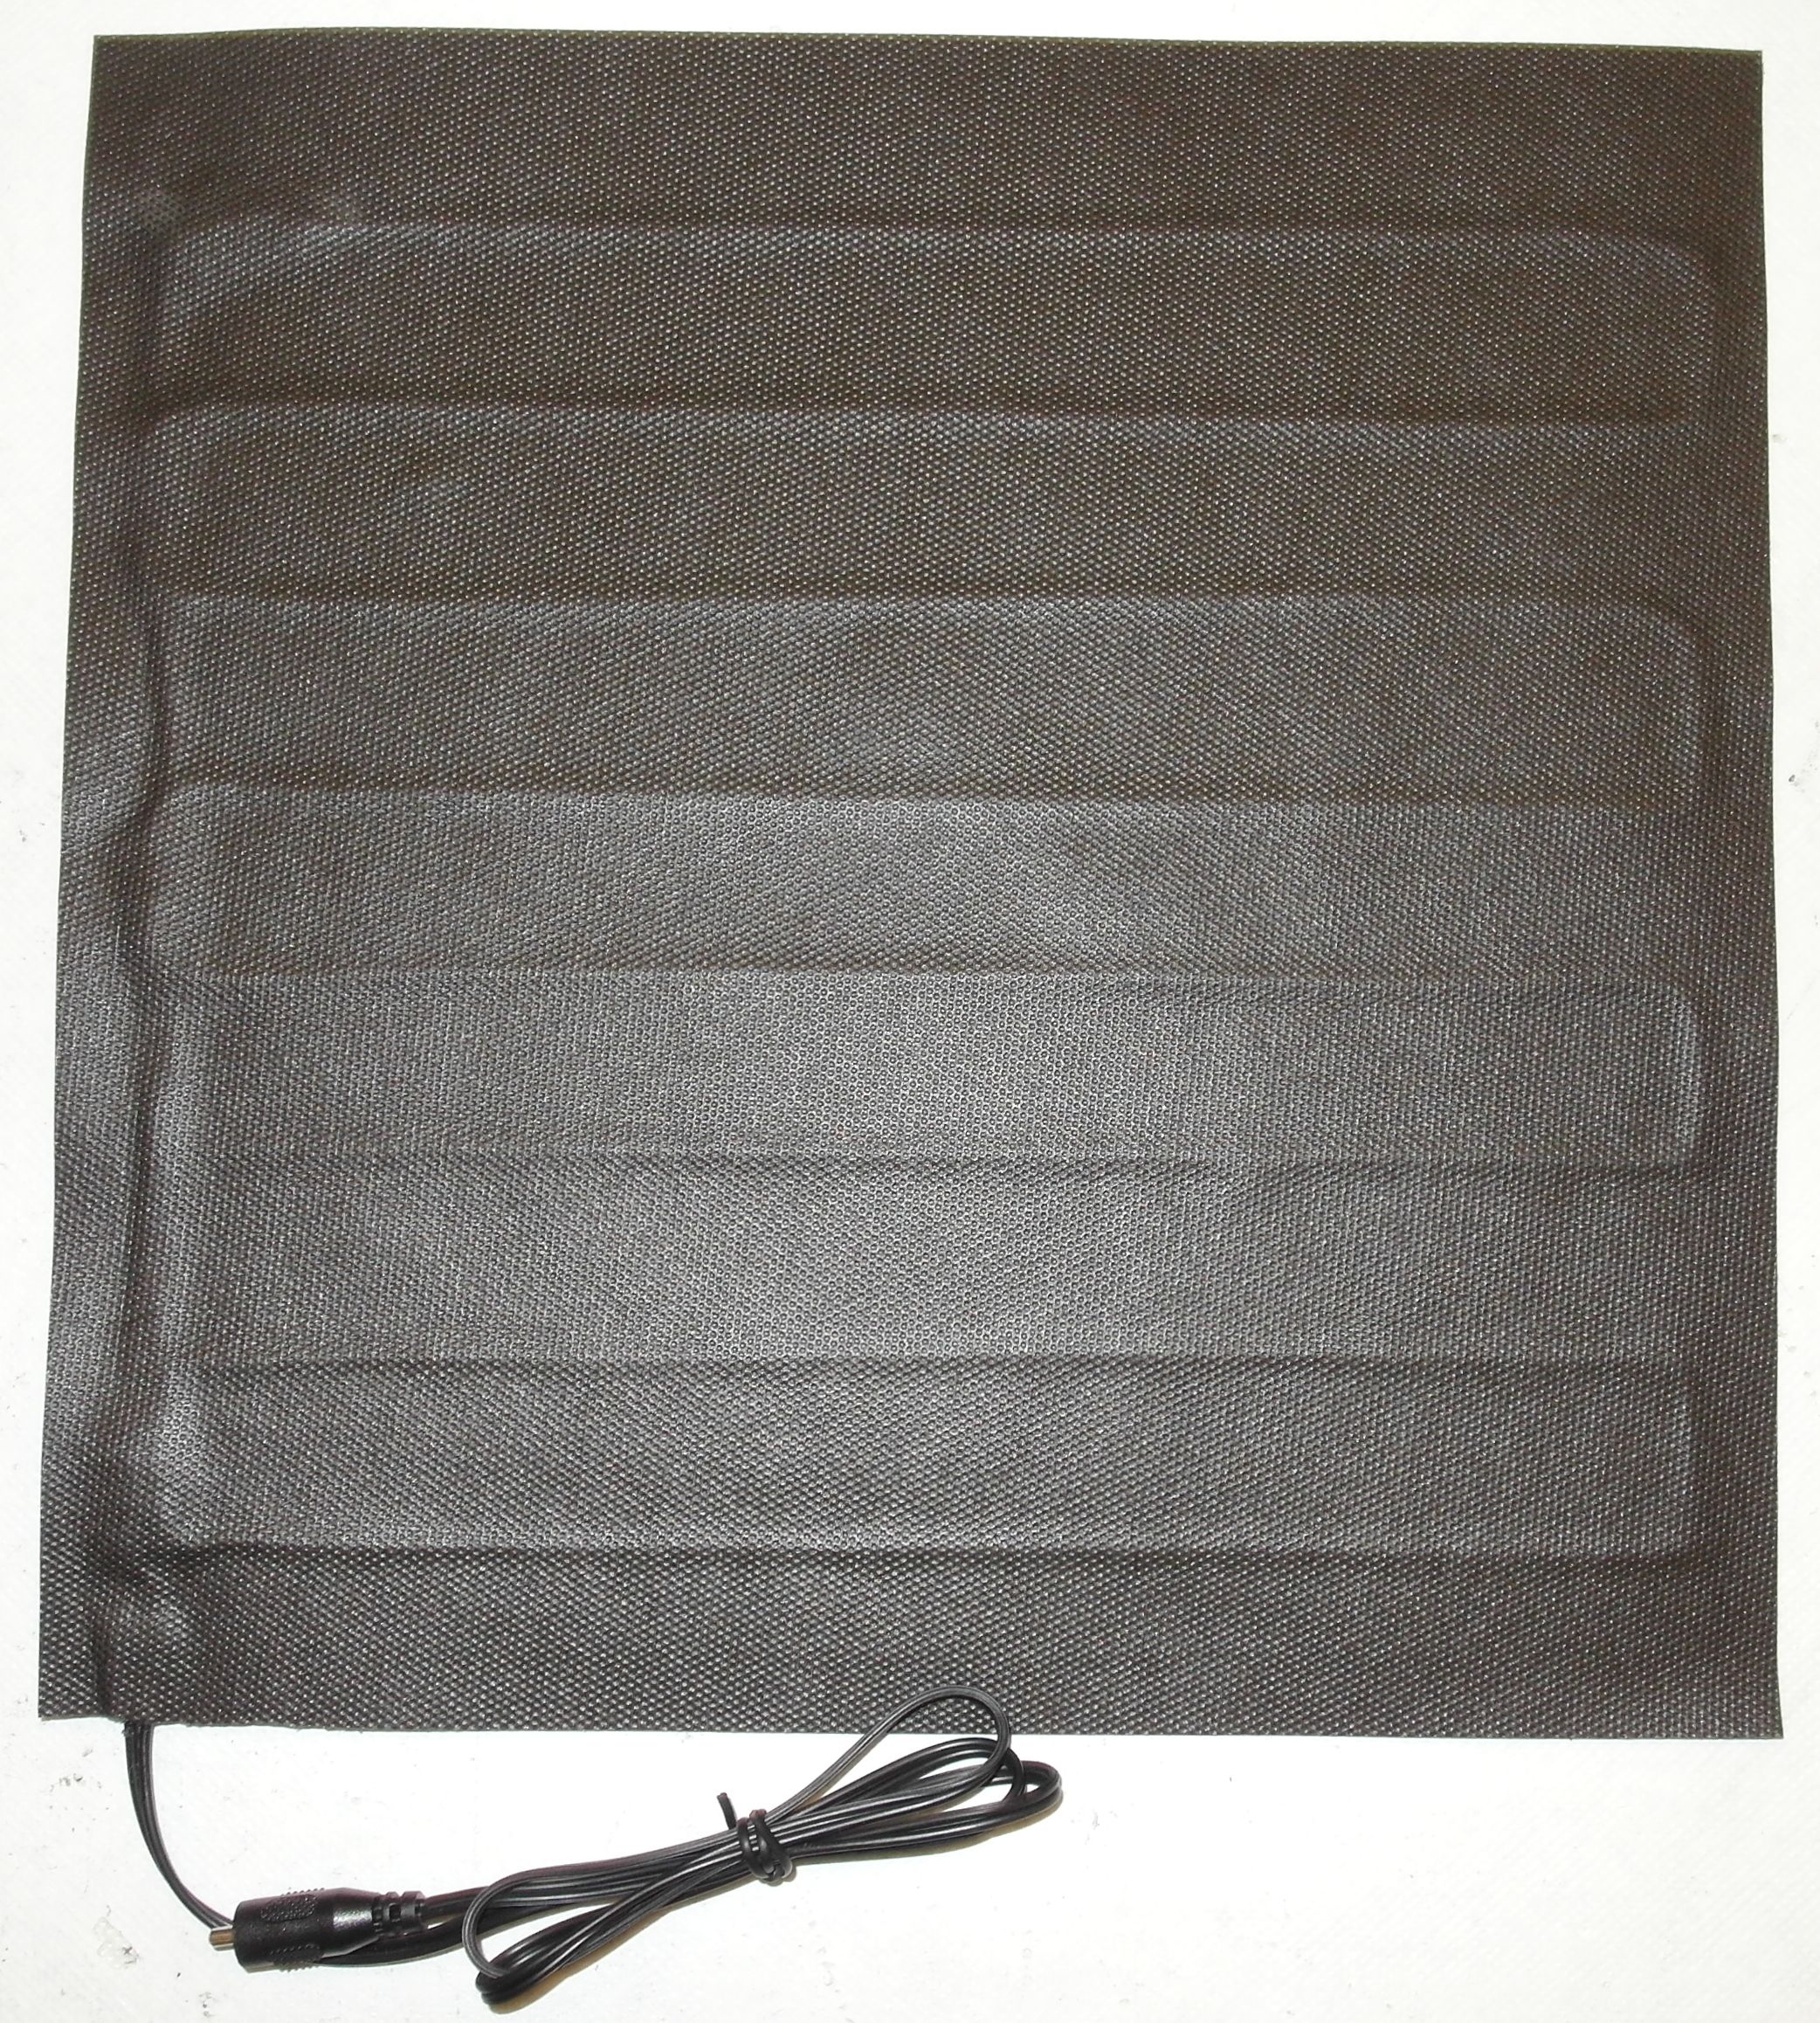 Heizmatte mit Carbonfolie & Textilbezug, 30 x 30 cm